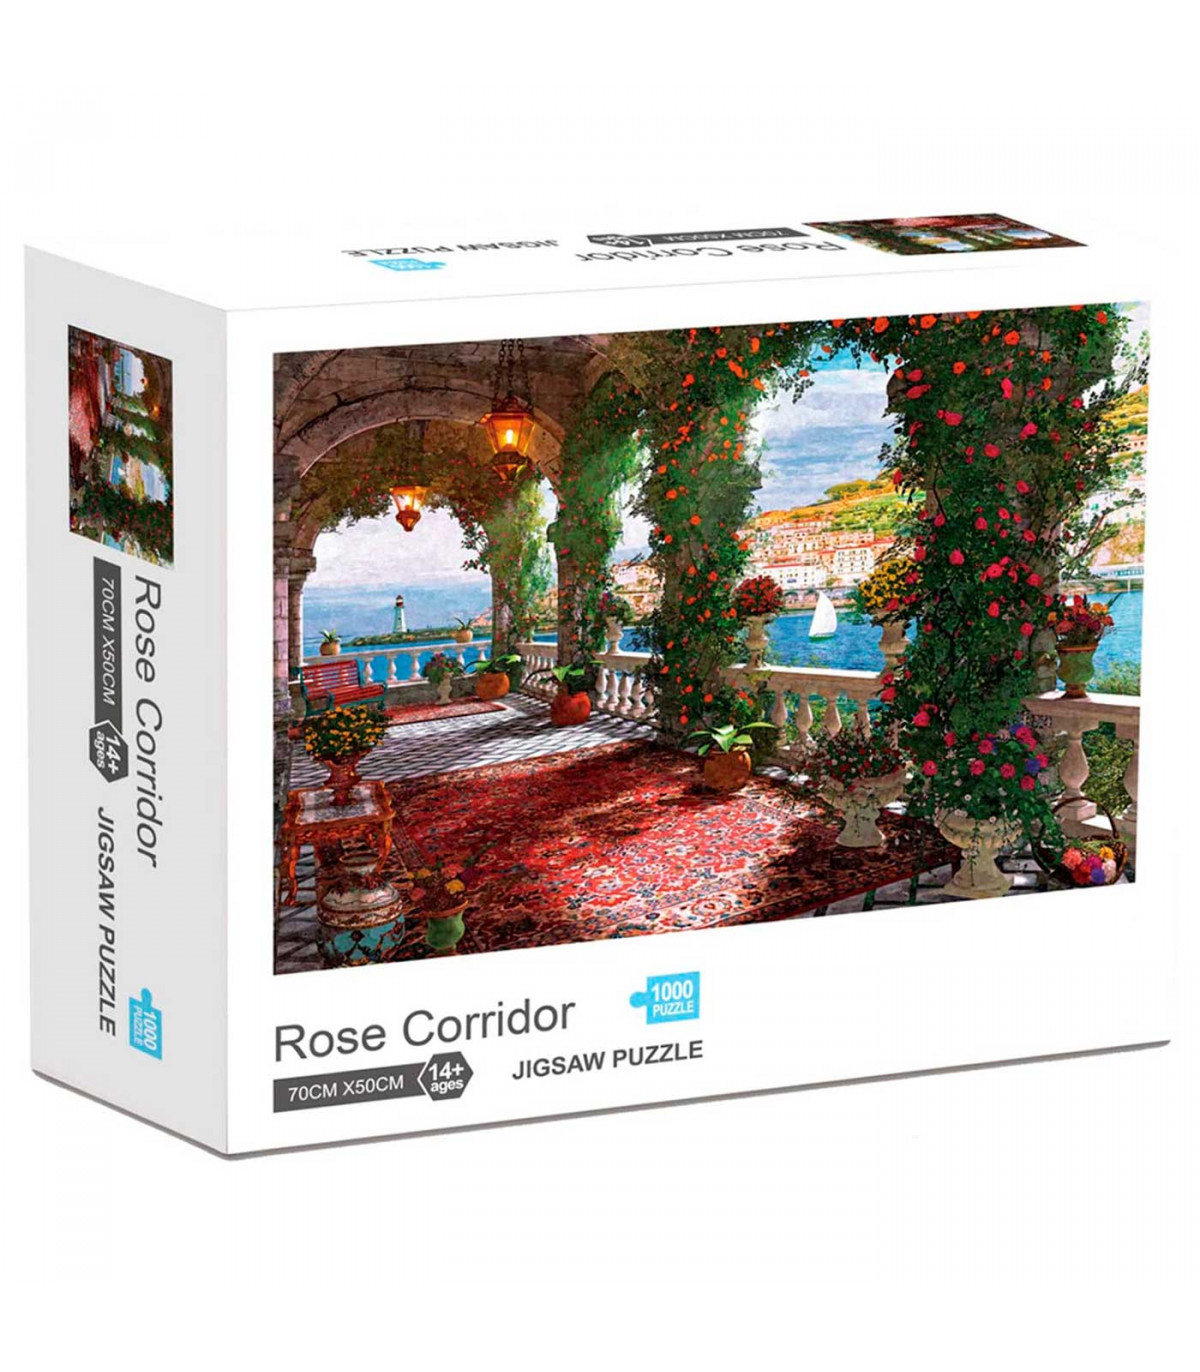 Puzzle 1000 piezas Rose Corridor, rompecabezas clásico para adultos 70 x 50 cm, jigsaw puzzle partir de 14 años, juego educati